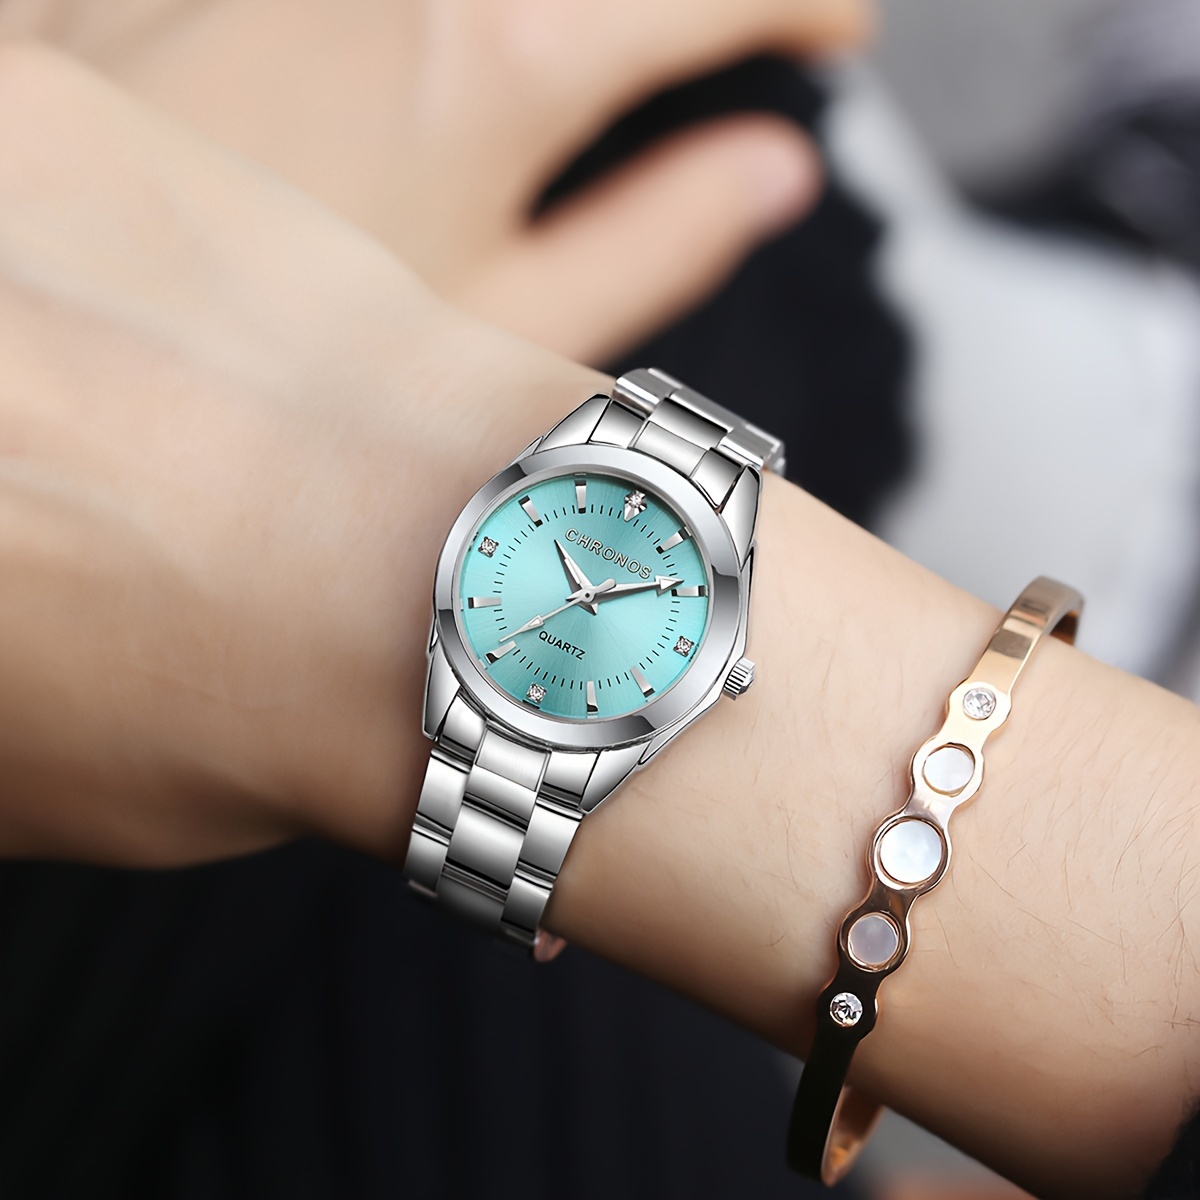 

Chronos Women's Watch Luxury Rhinestone Quartz Watch Wr Fashion Analog Stainless Steel Wrist Watch